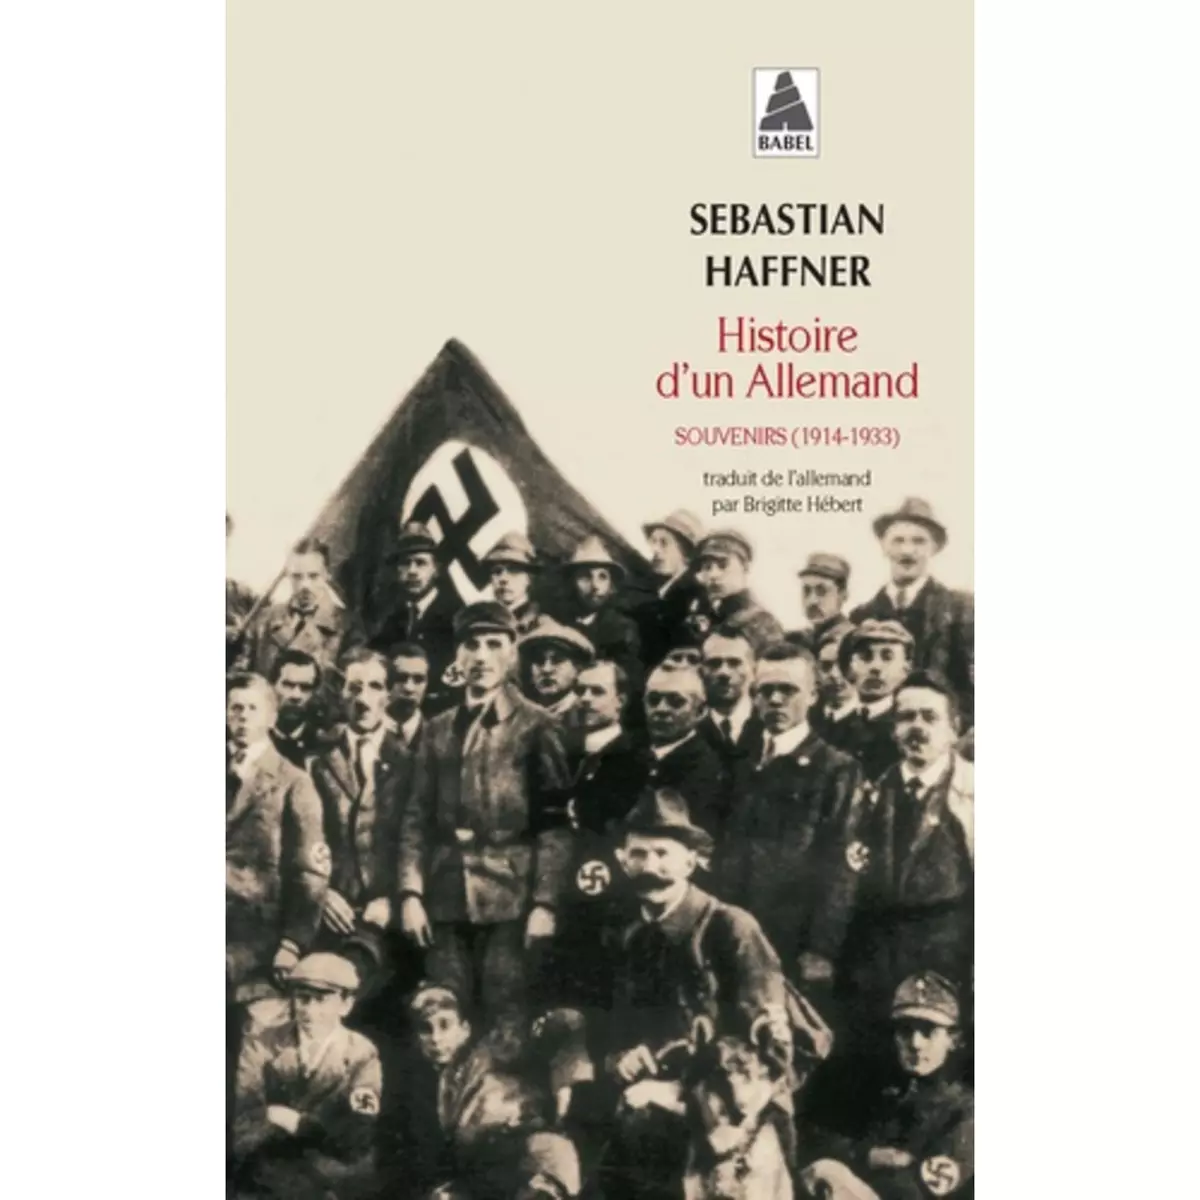  HISTOIRE D'UN ALLEMAND. SOUVENIRS 1914-1933, EDITION REVUE ET AUGMENTEE, Haffner Sebastian